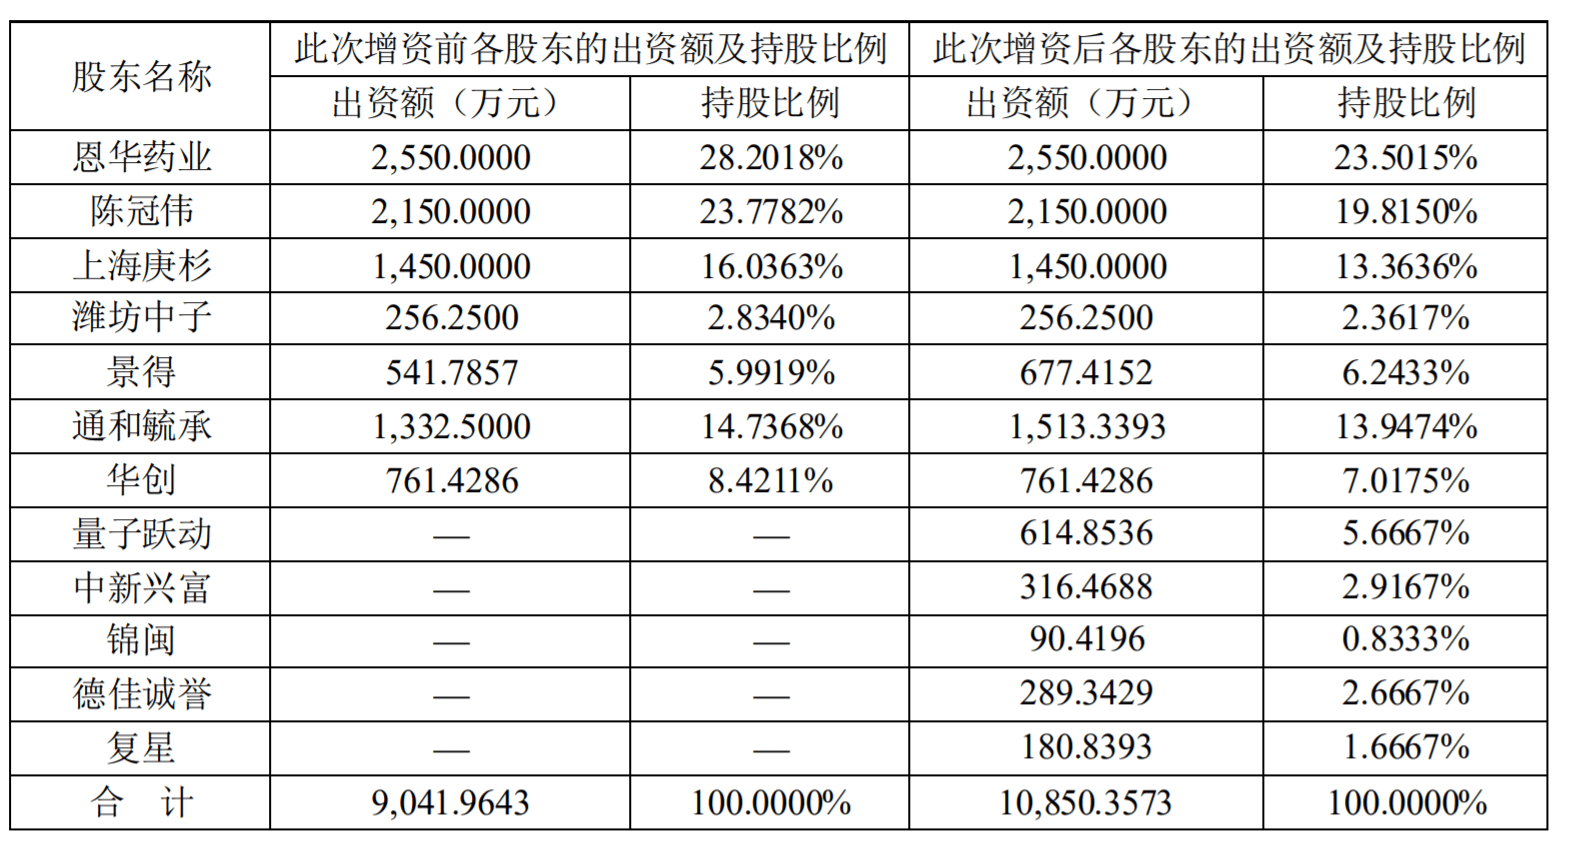 华恩医药:持有江苏浩信清股份减少至23.5%